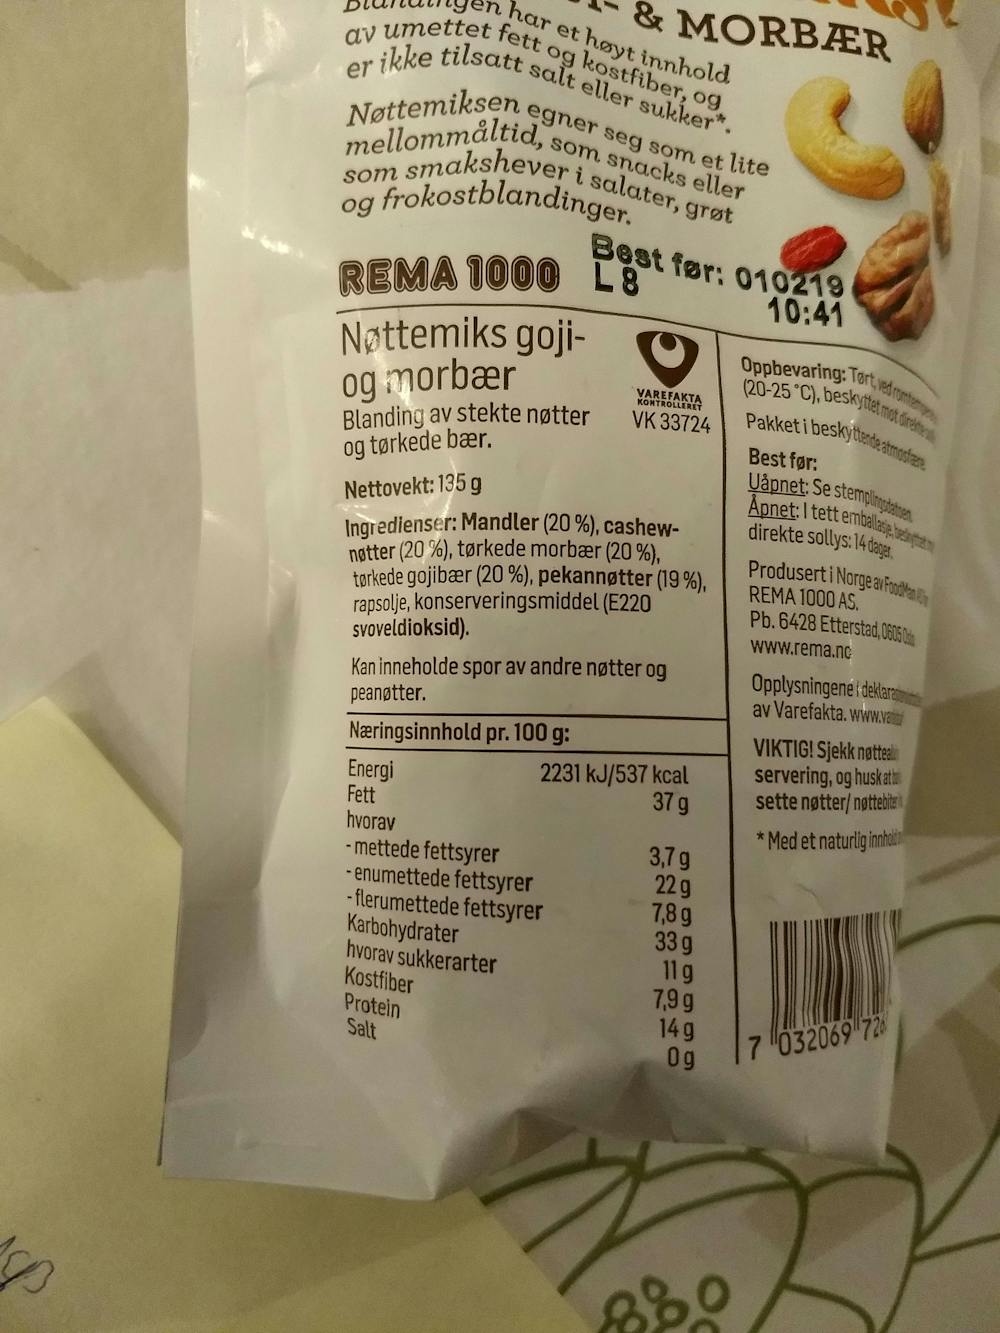 Ingrediensliste - Nøttemiks goji- og morbær, Rema 1000